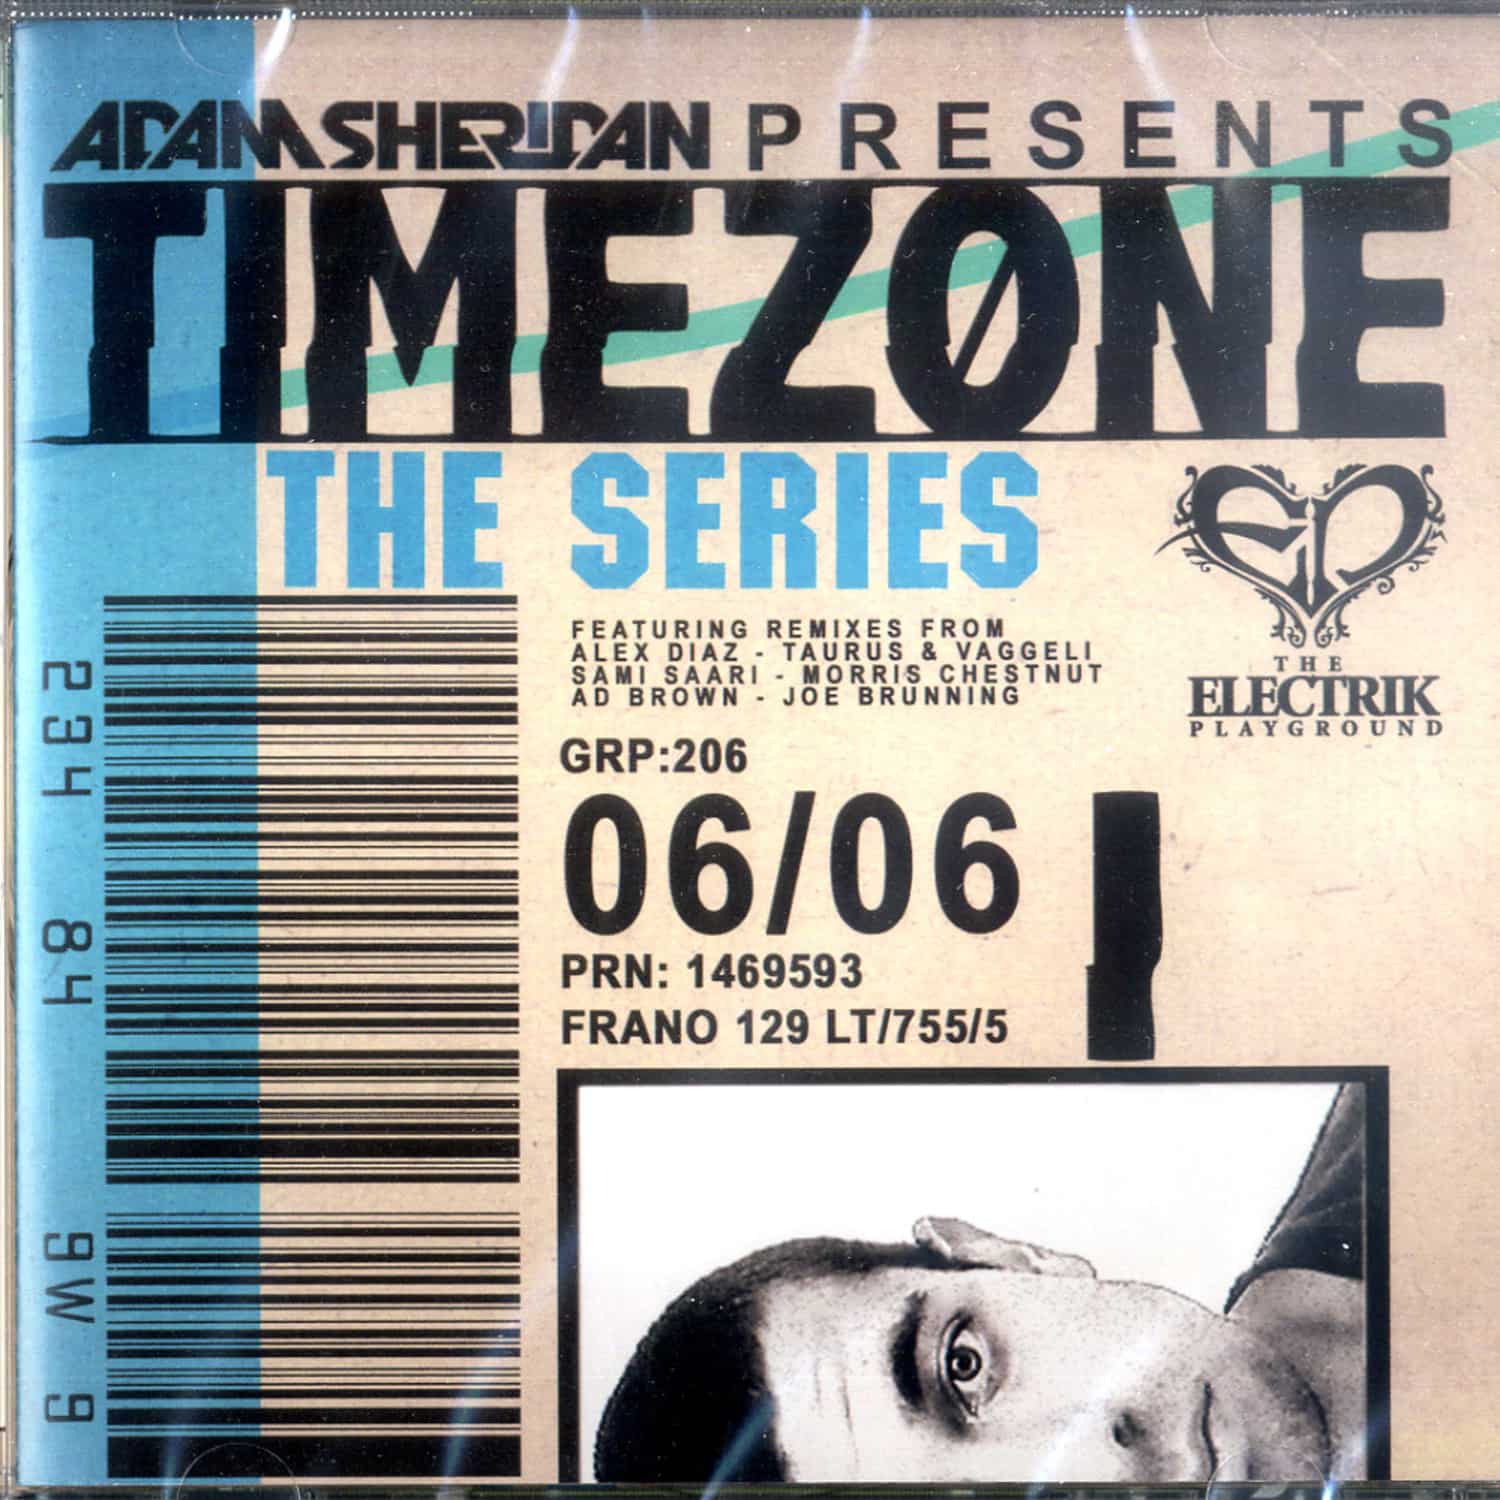 Adam Sheridan - TIMEZONE THE SERIES 